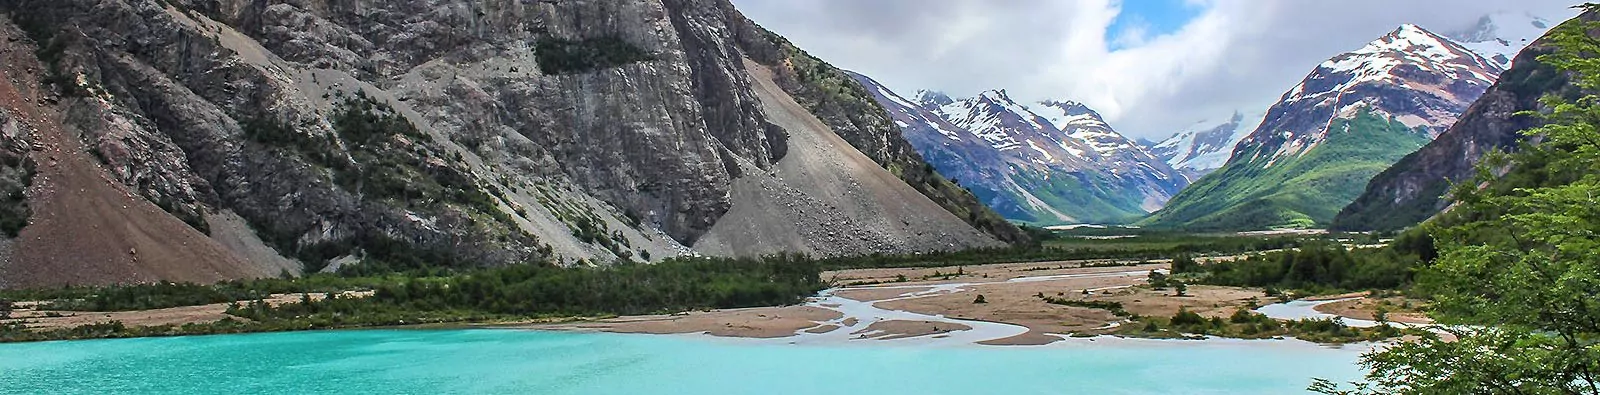 Lago de General Carrero in Aysén Region of Chile